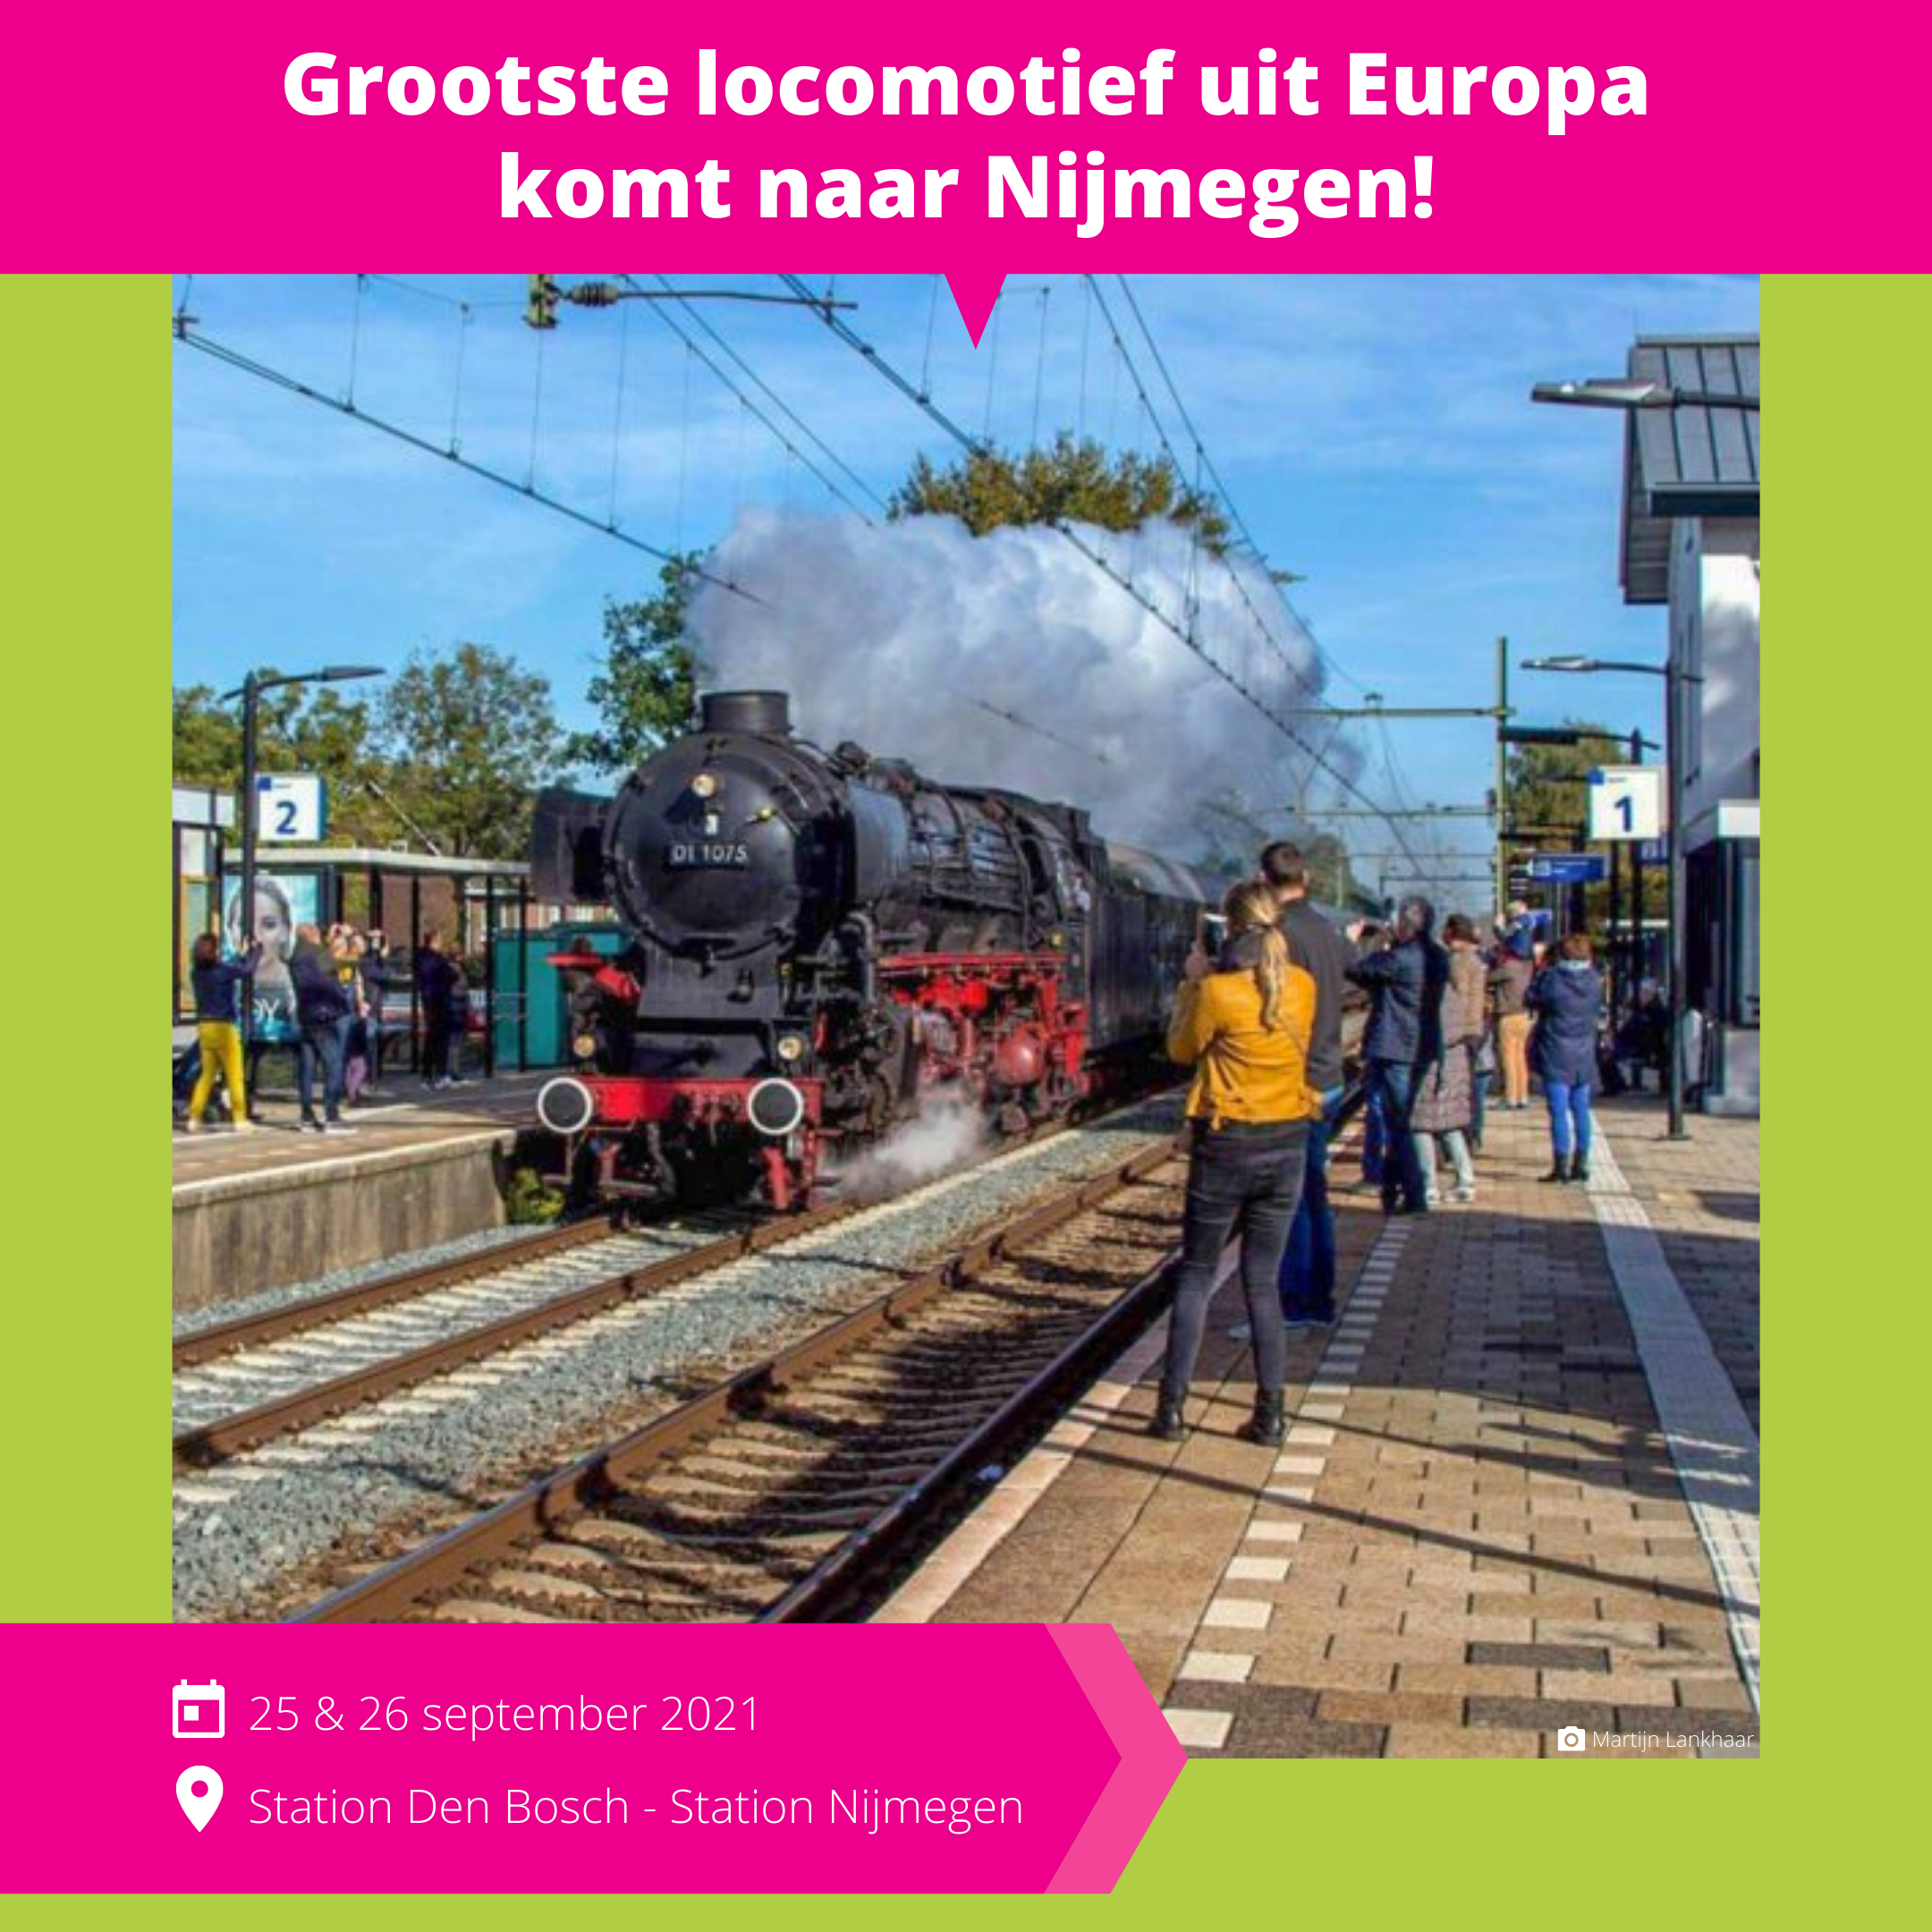 De_Vrijetijdkrant_grootste_locomotief_uit_Europa_komt_naar_Nijmegen_INSTA